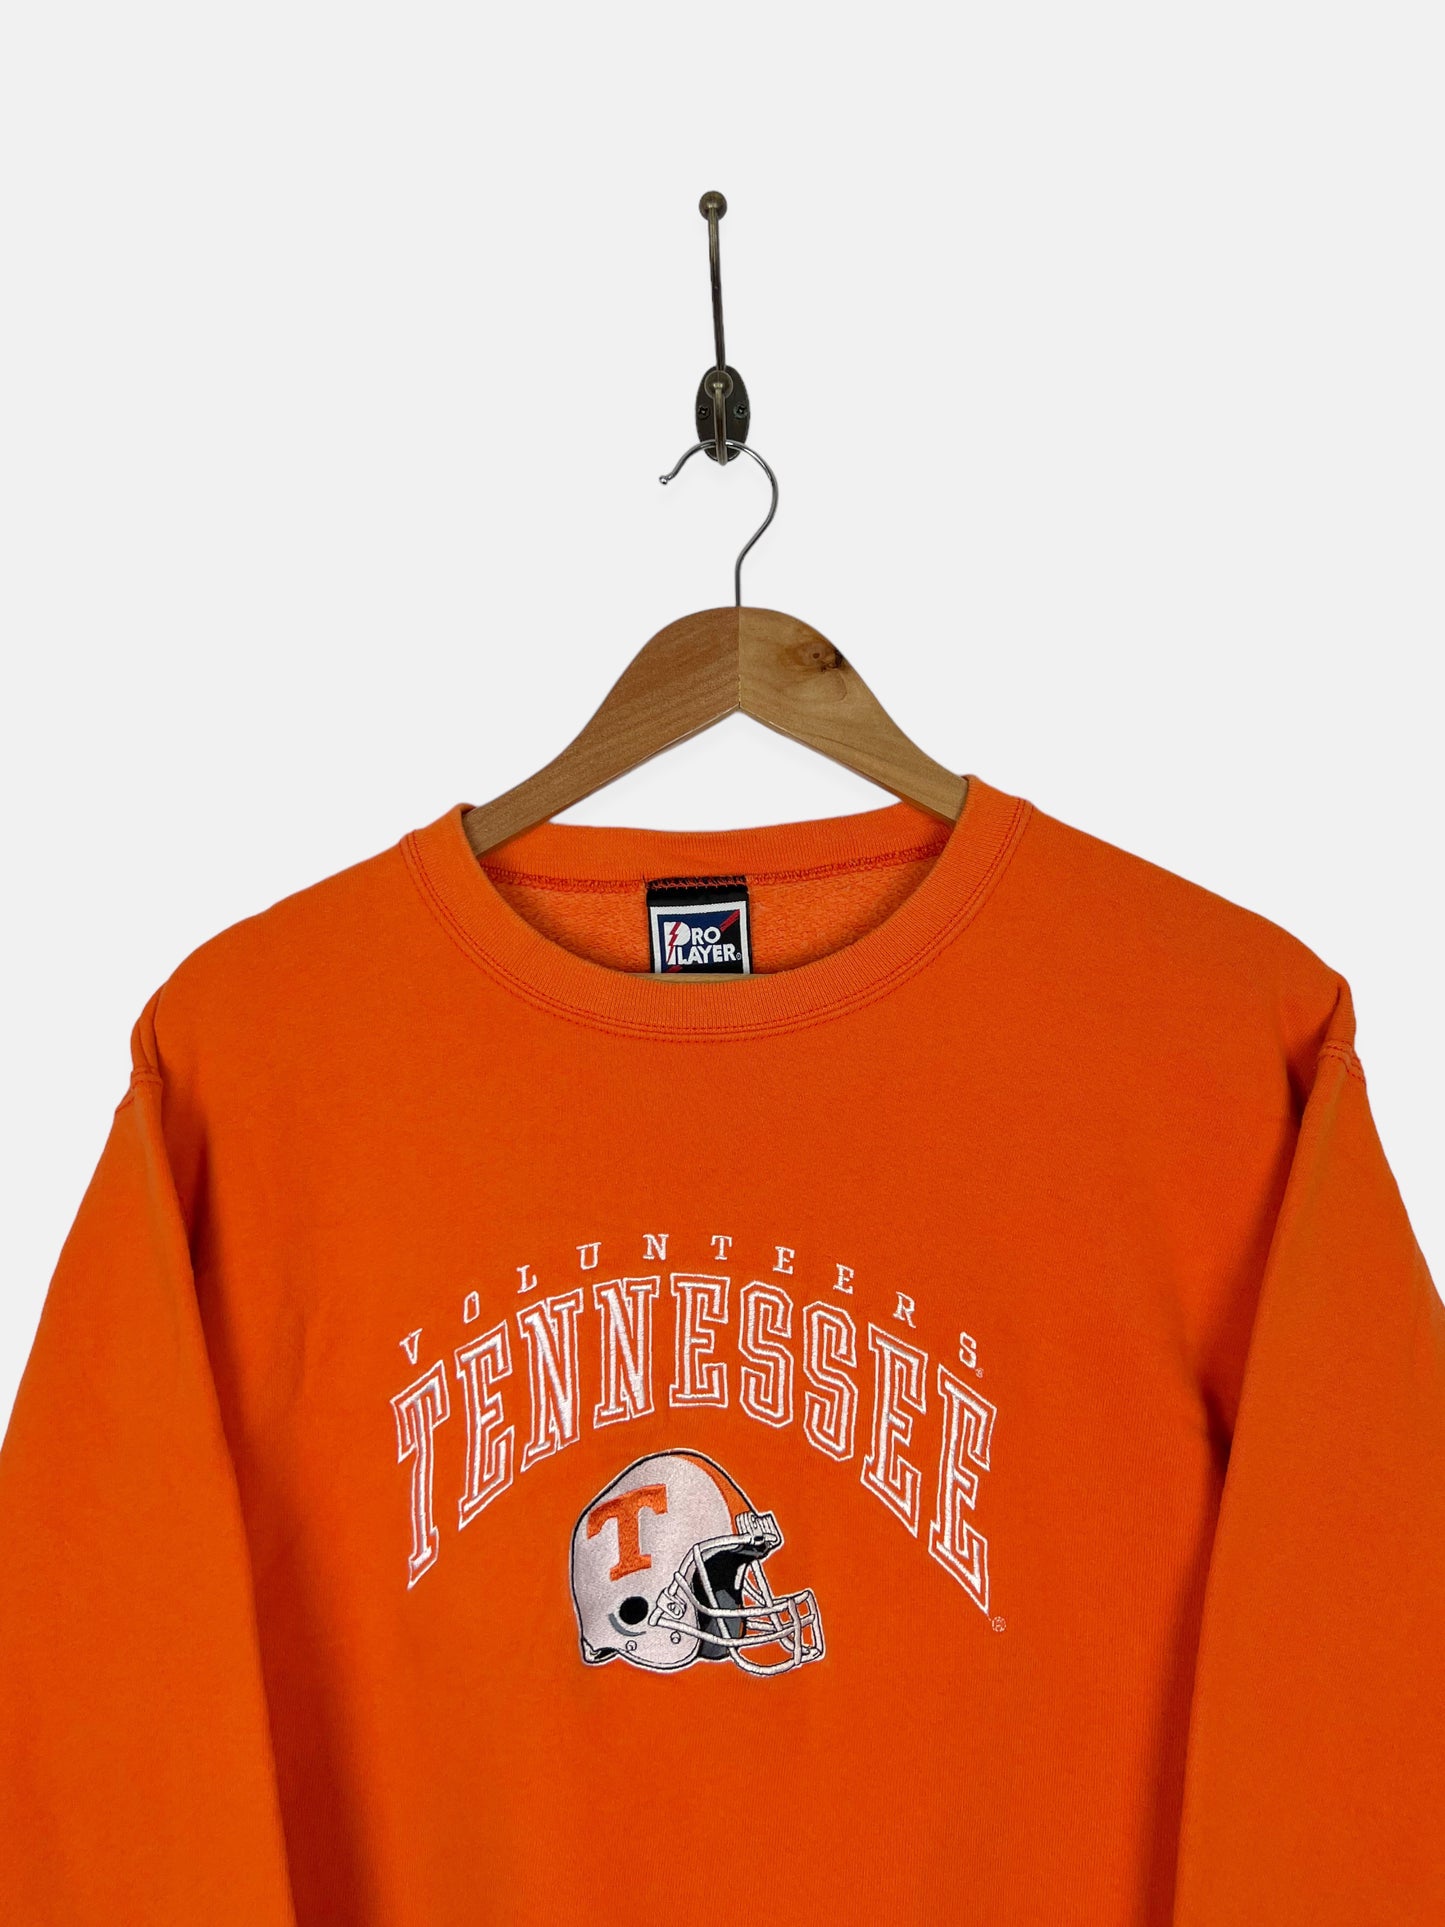 90's Tennessee Volunteers Embroidered Vintage Sweatshirt Size 8